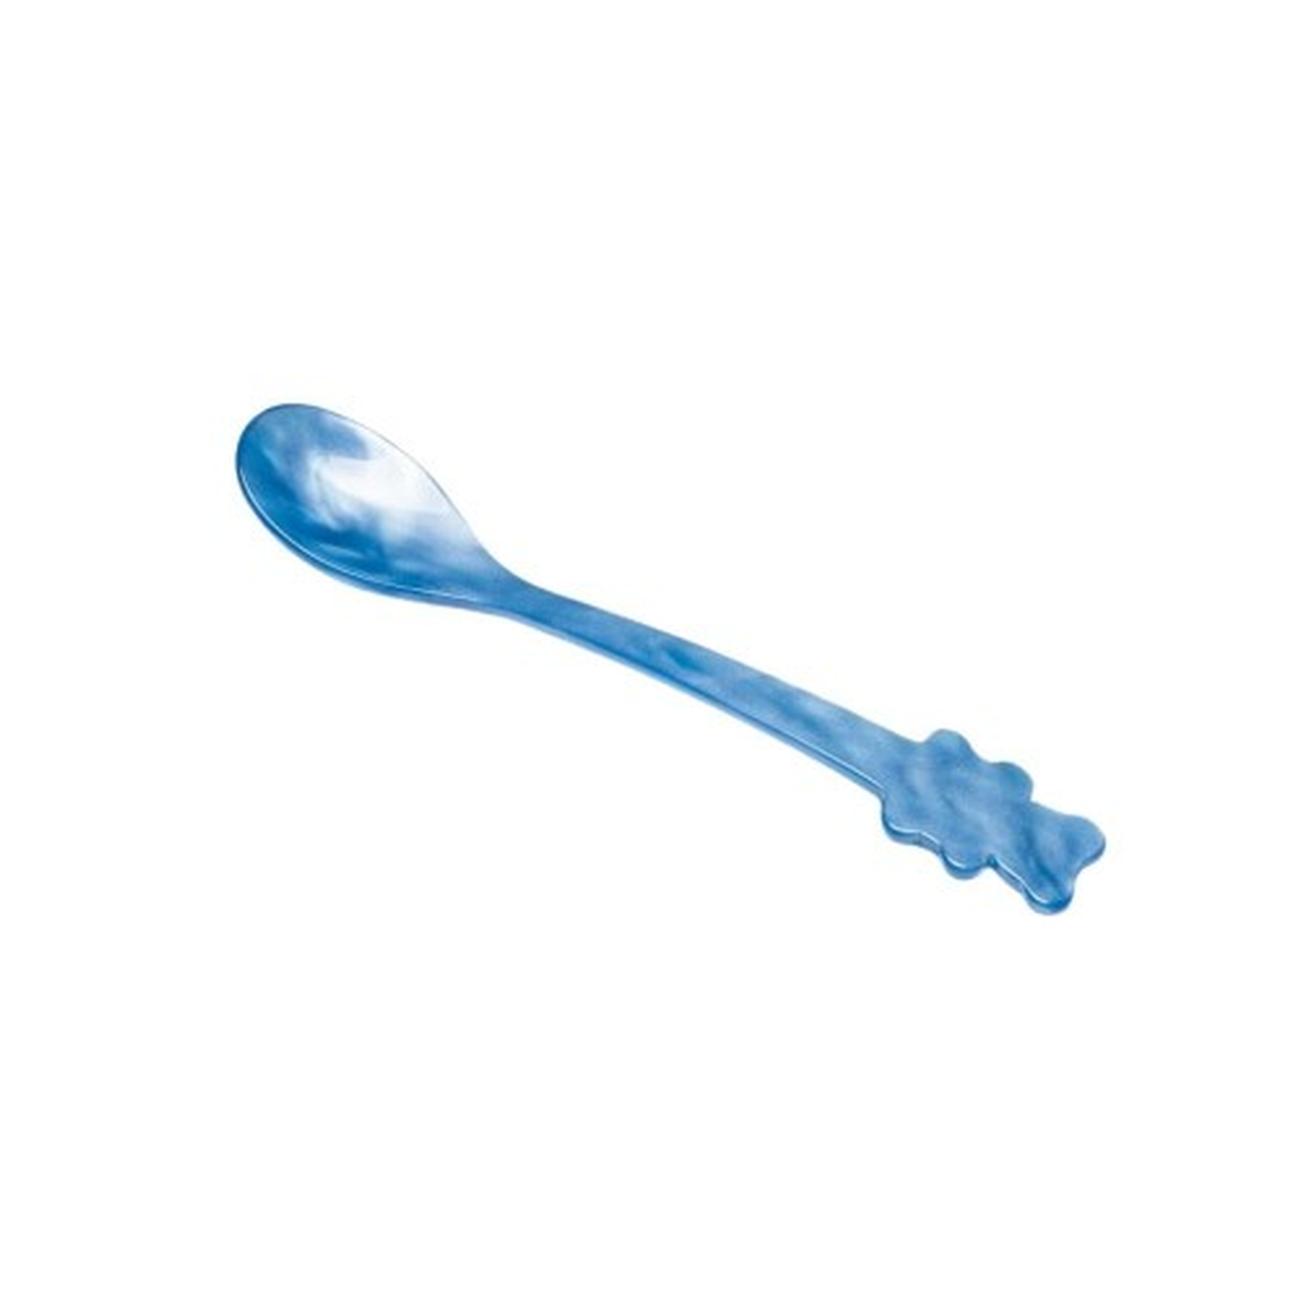 heim-sohne-teddy-spoon-blue - Heim Sohne Teddy Spoon-Blue